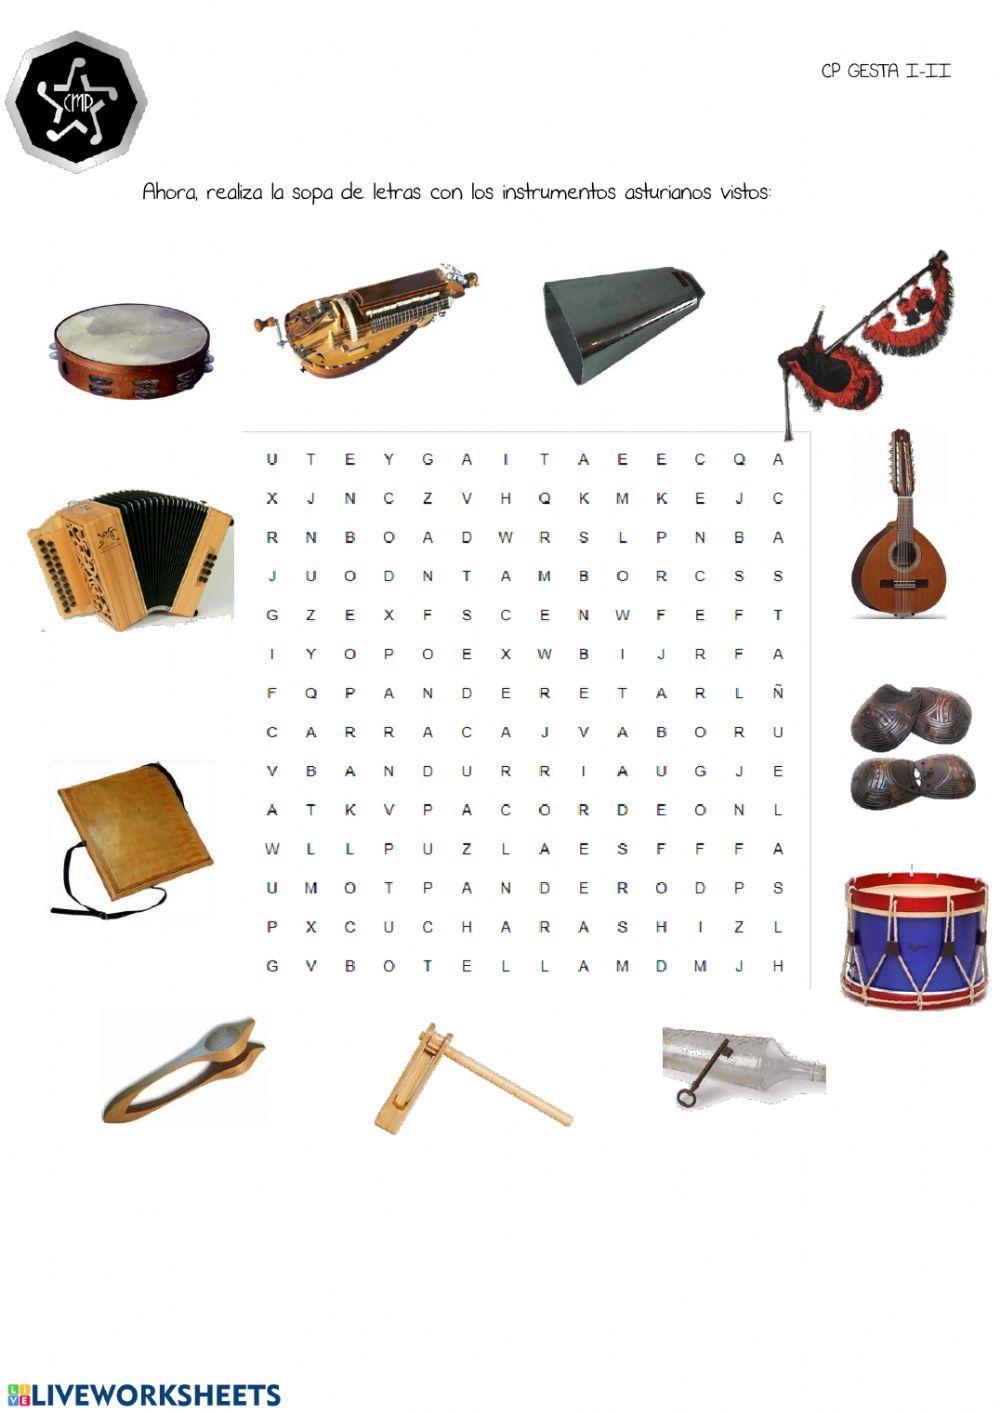 Instrumentos tradicionales asturianos